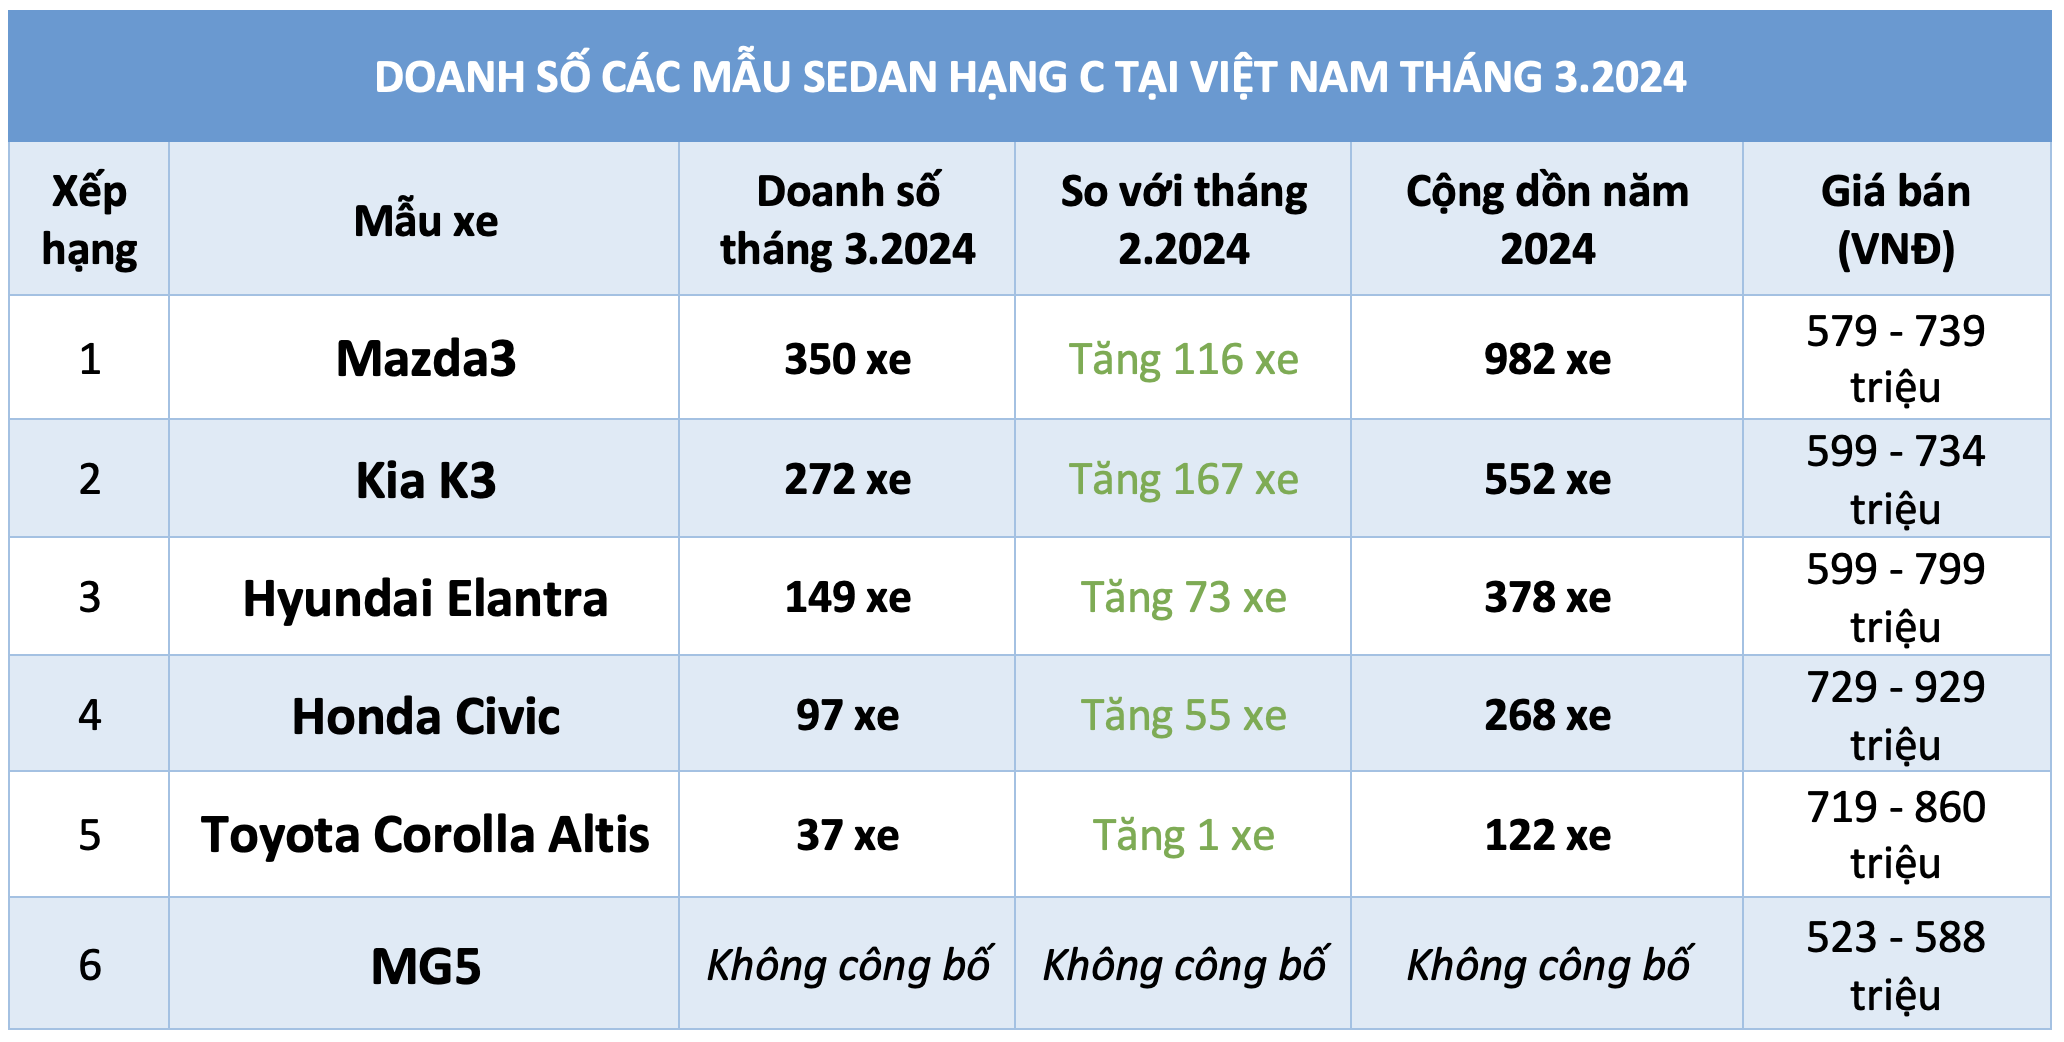 Thông tin chi tiết doanh số bán các mẫu ô tô sedan hạng C tầm giá dưới 900 triệu đồng tại Việt Nam